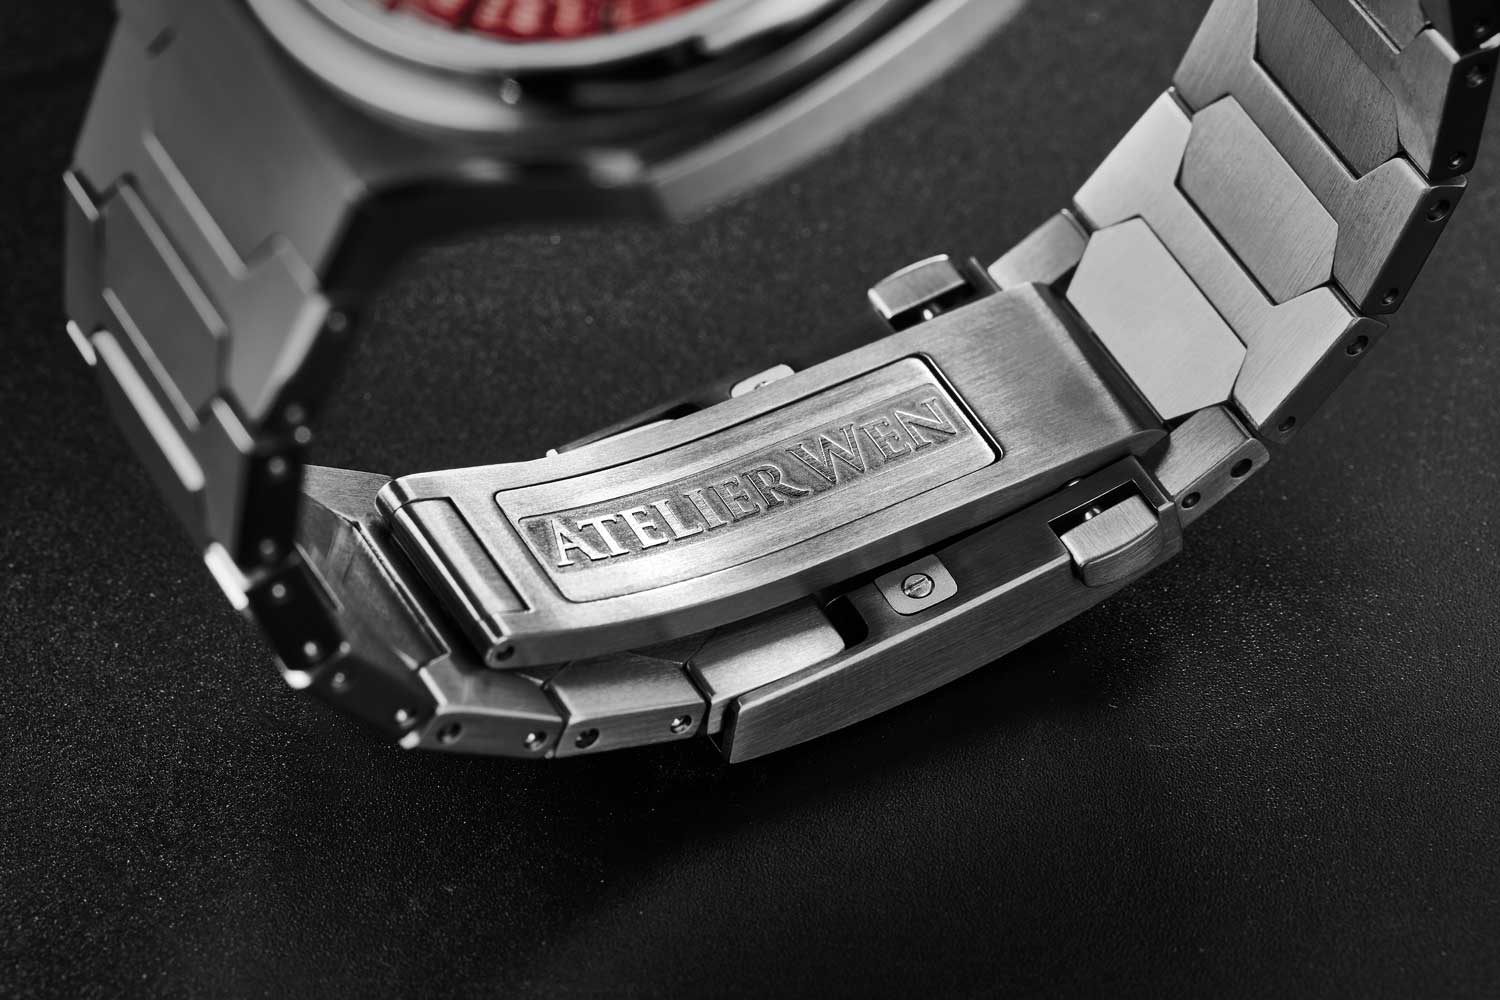 A grade 5 titanium case and integrated titanium bracelet, with quick micro-adjustment system